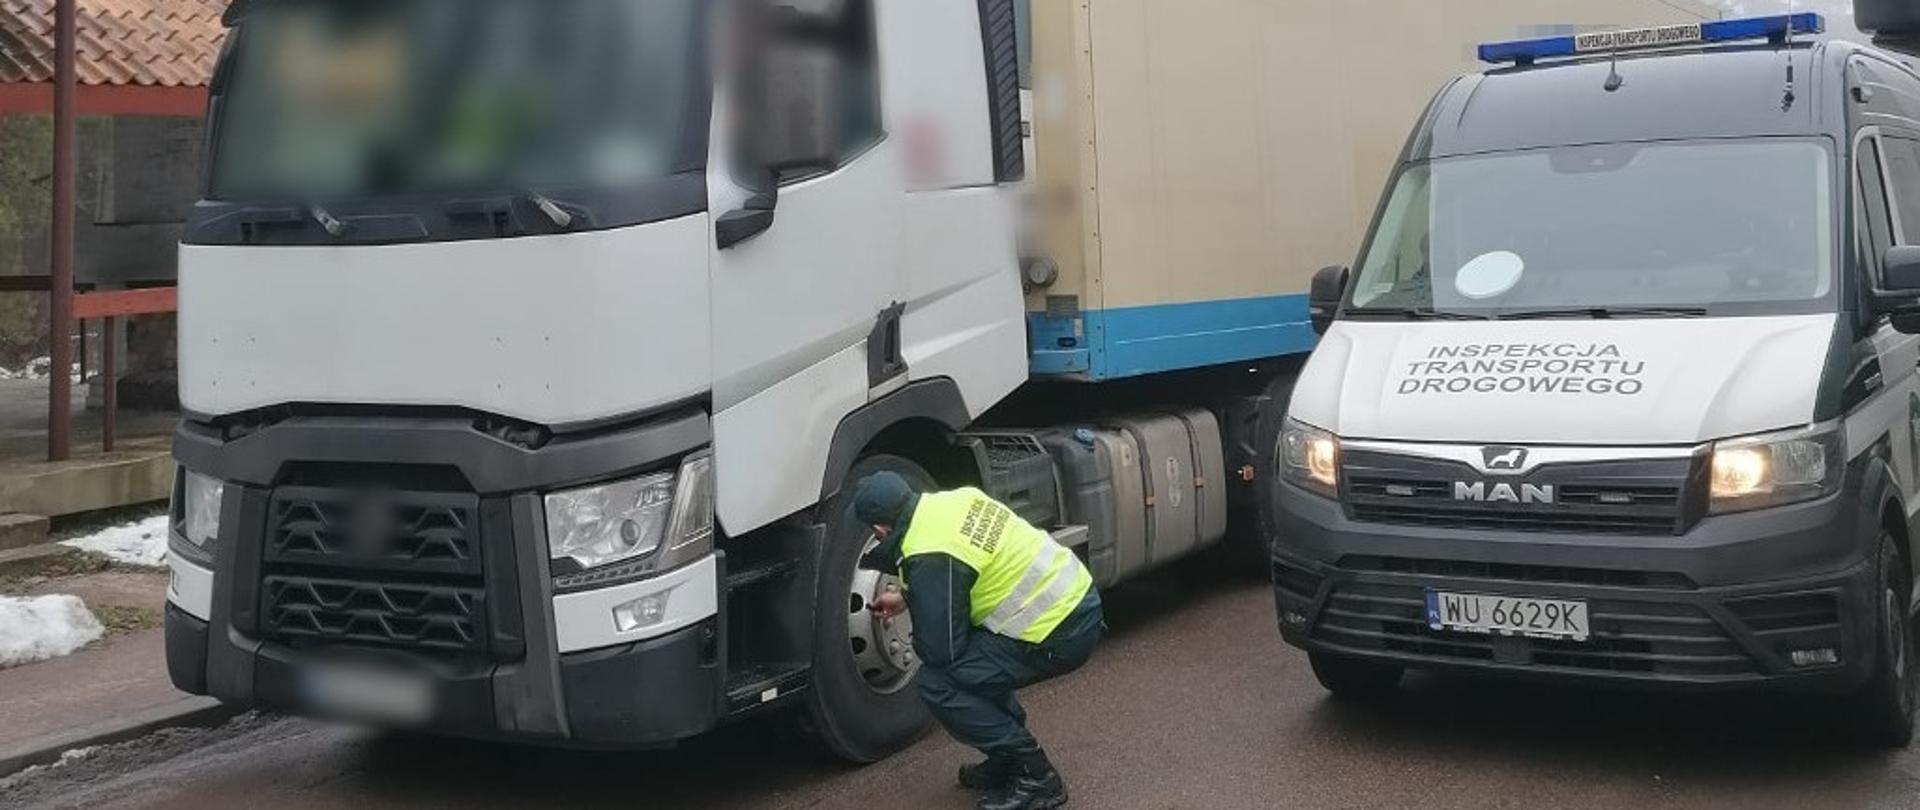 Ukraiński zestaw ciężarowy kontrolowany przez inspektorów podlaskiej Inspekcji Transportu Drogowego.